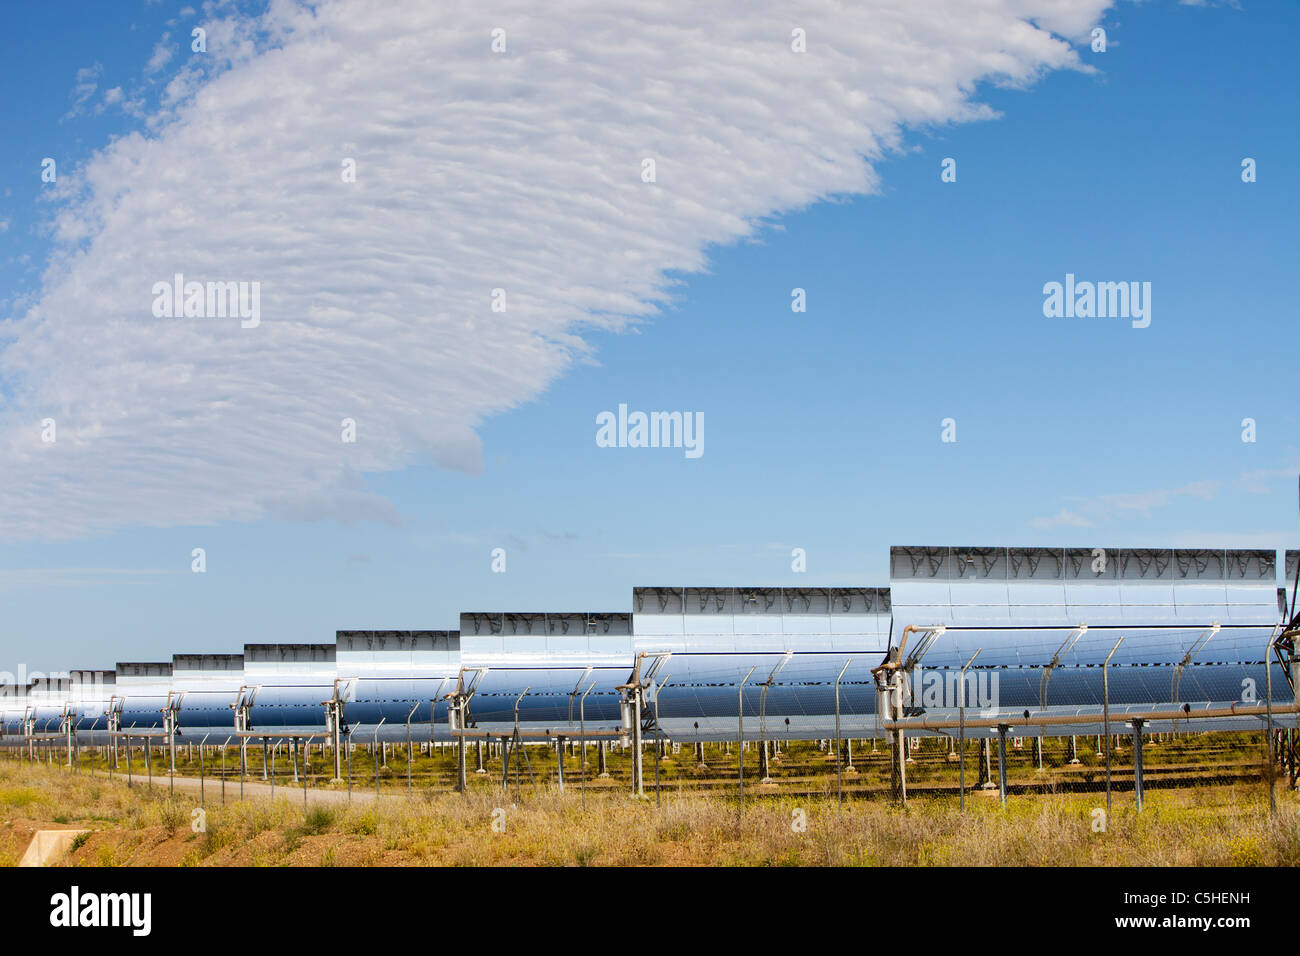 La estación de energía solar Andasol, cerca de Guadix, España, el primer y más grande del mundo de colectores cilindro parabólicos térmica solar power station Foto de stock